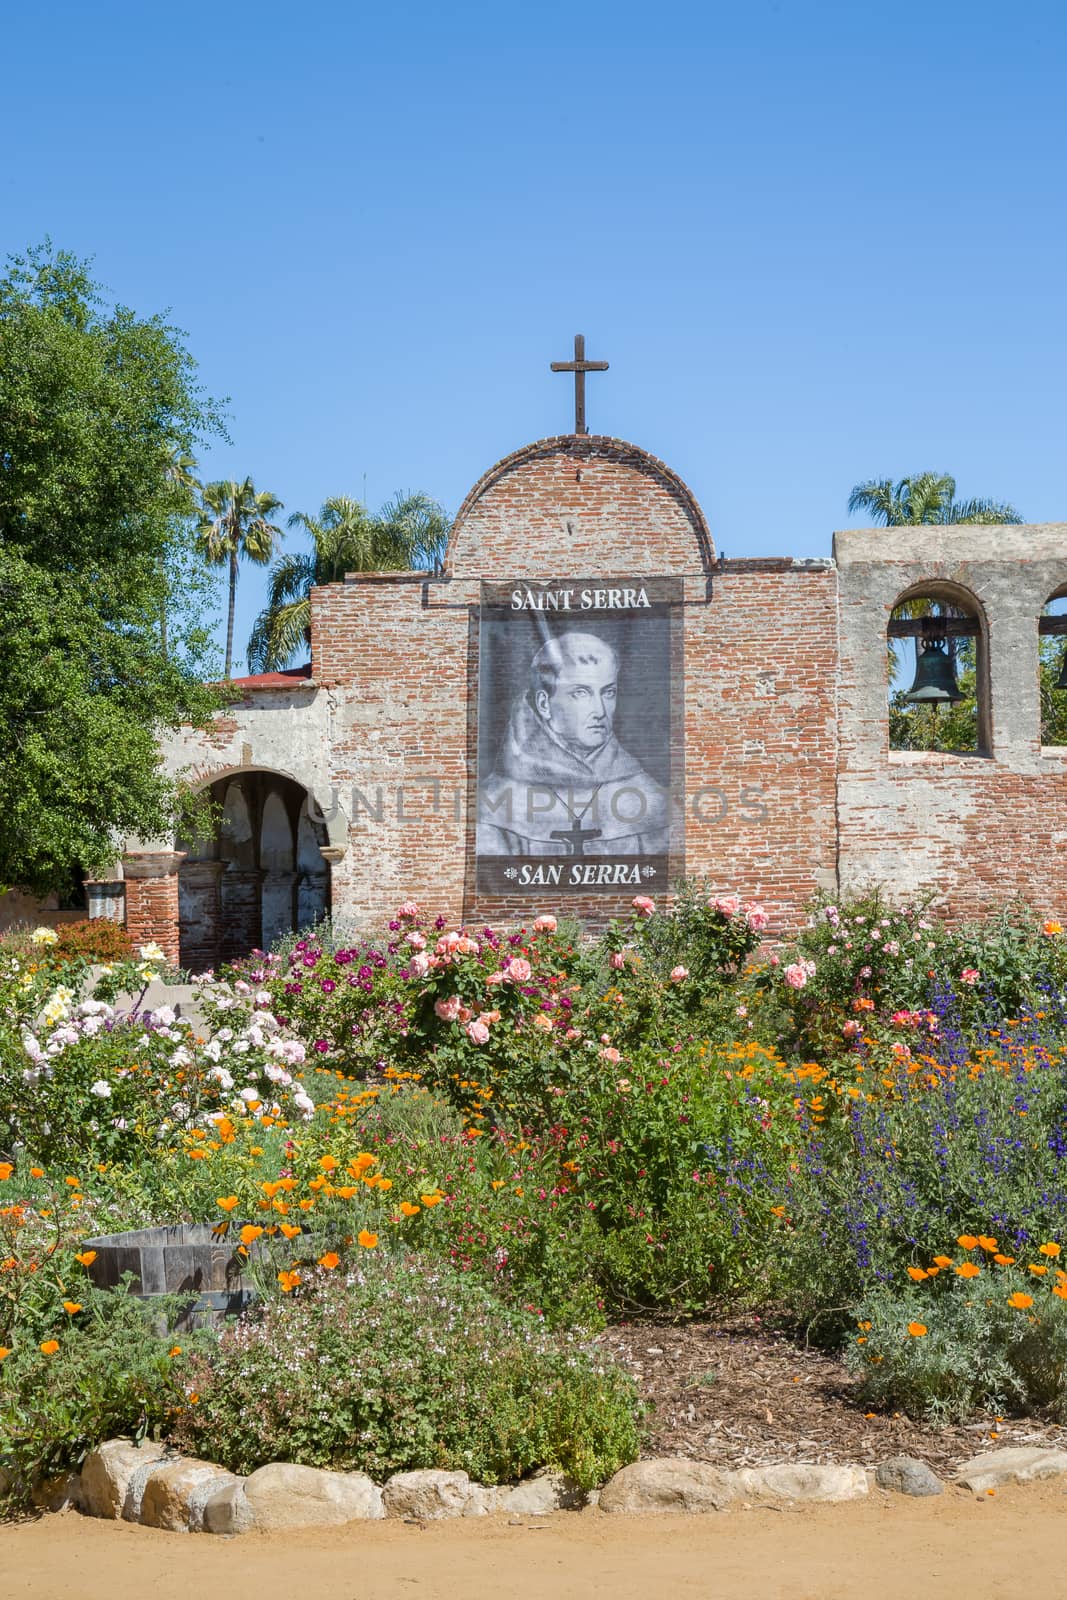 SAN JUAN CAPISTRANO, CA/USA - APRIL 2, 2016: Exterior facade and outdoor gardens at Mission San Juan Capistrano. Mission San Juan Capistrano was a Spanish mission in in present-day San Juan Capistrano, California.